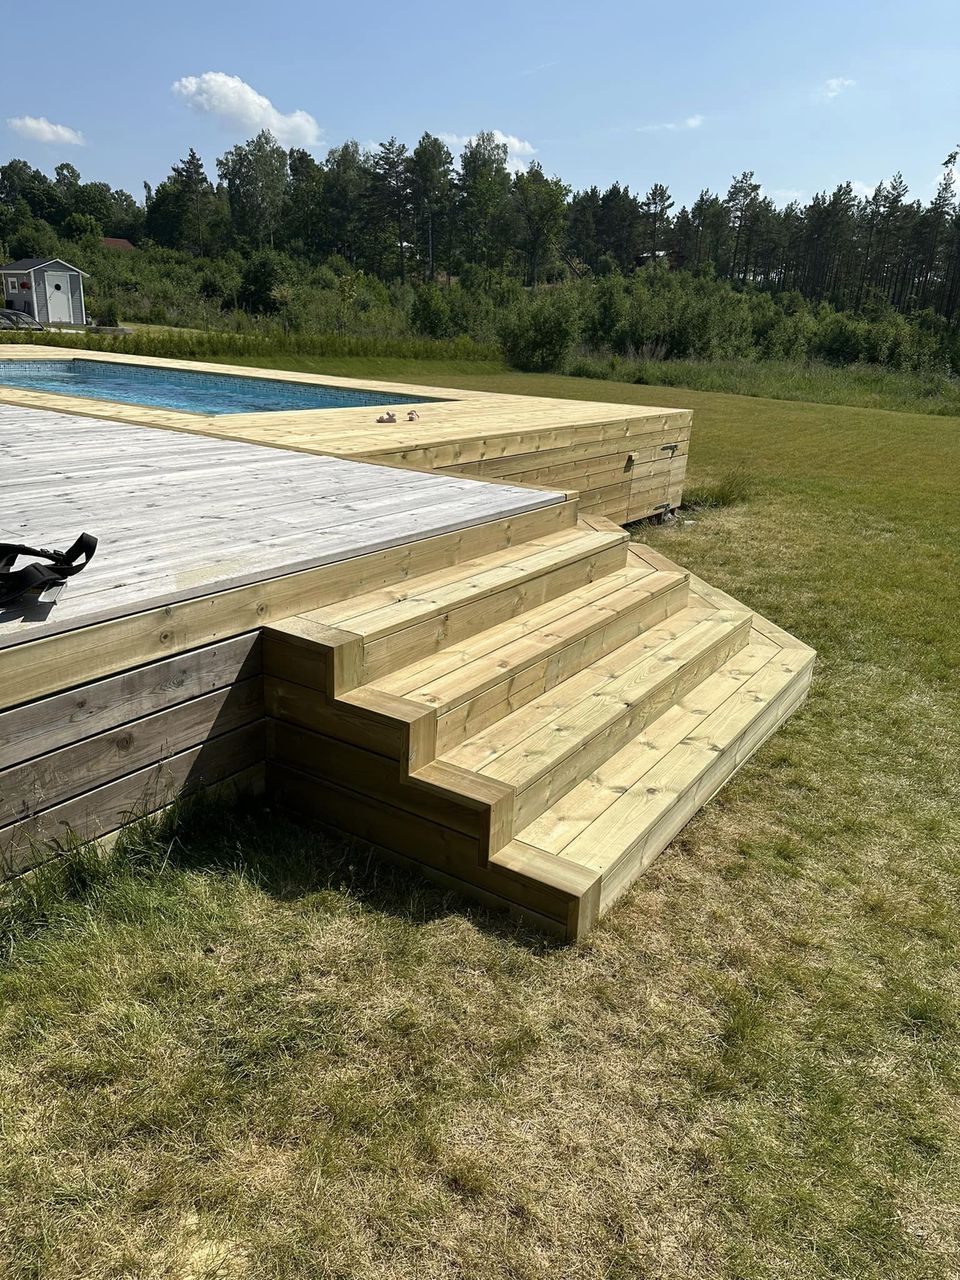 Referensjobb "Pool med altan" utfört av Käbo bygg AB